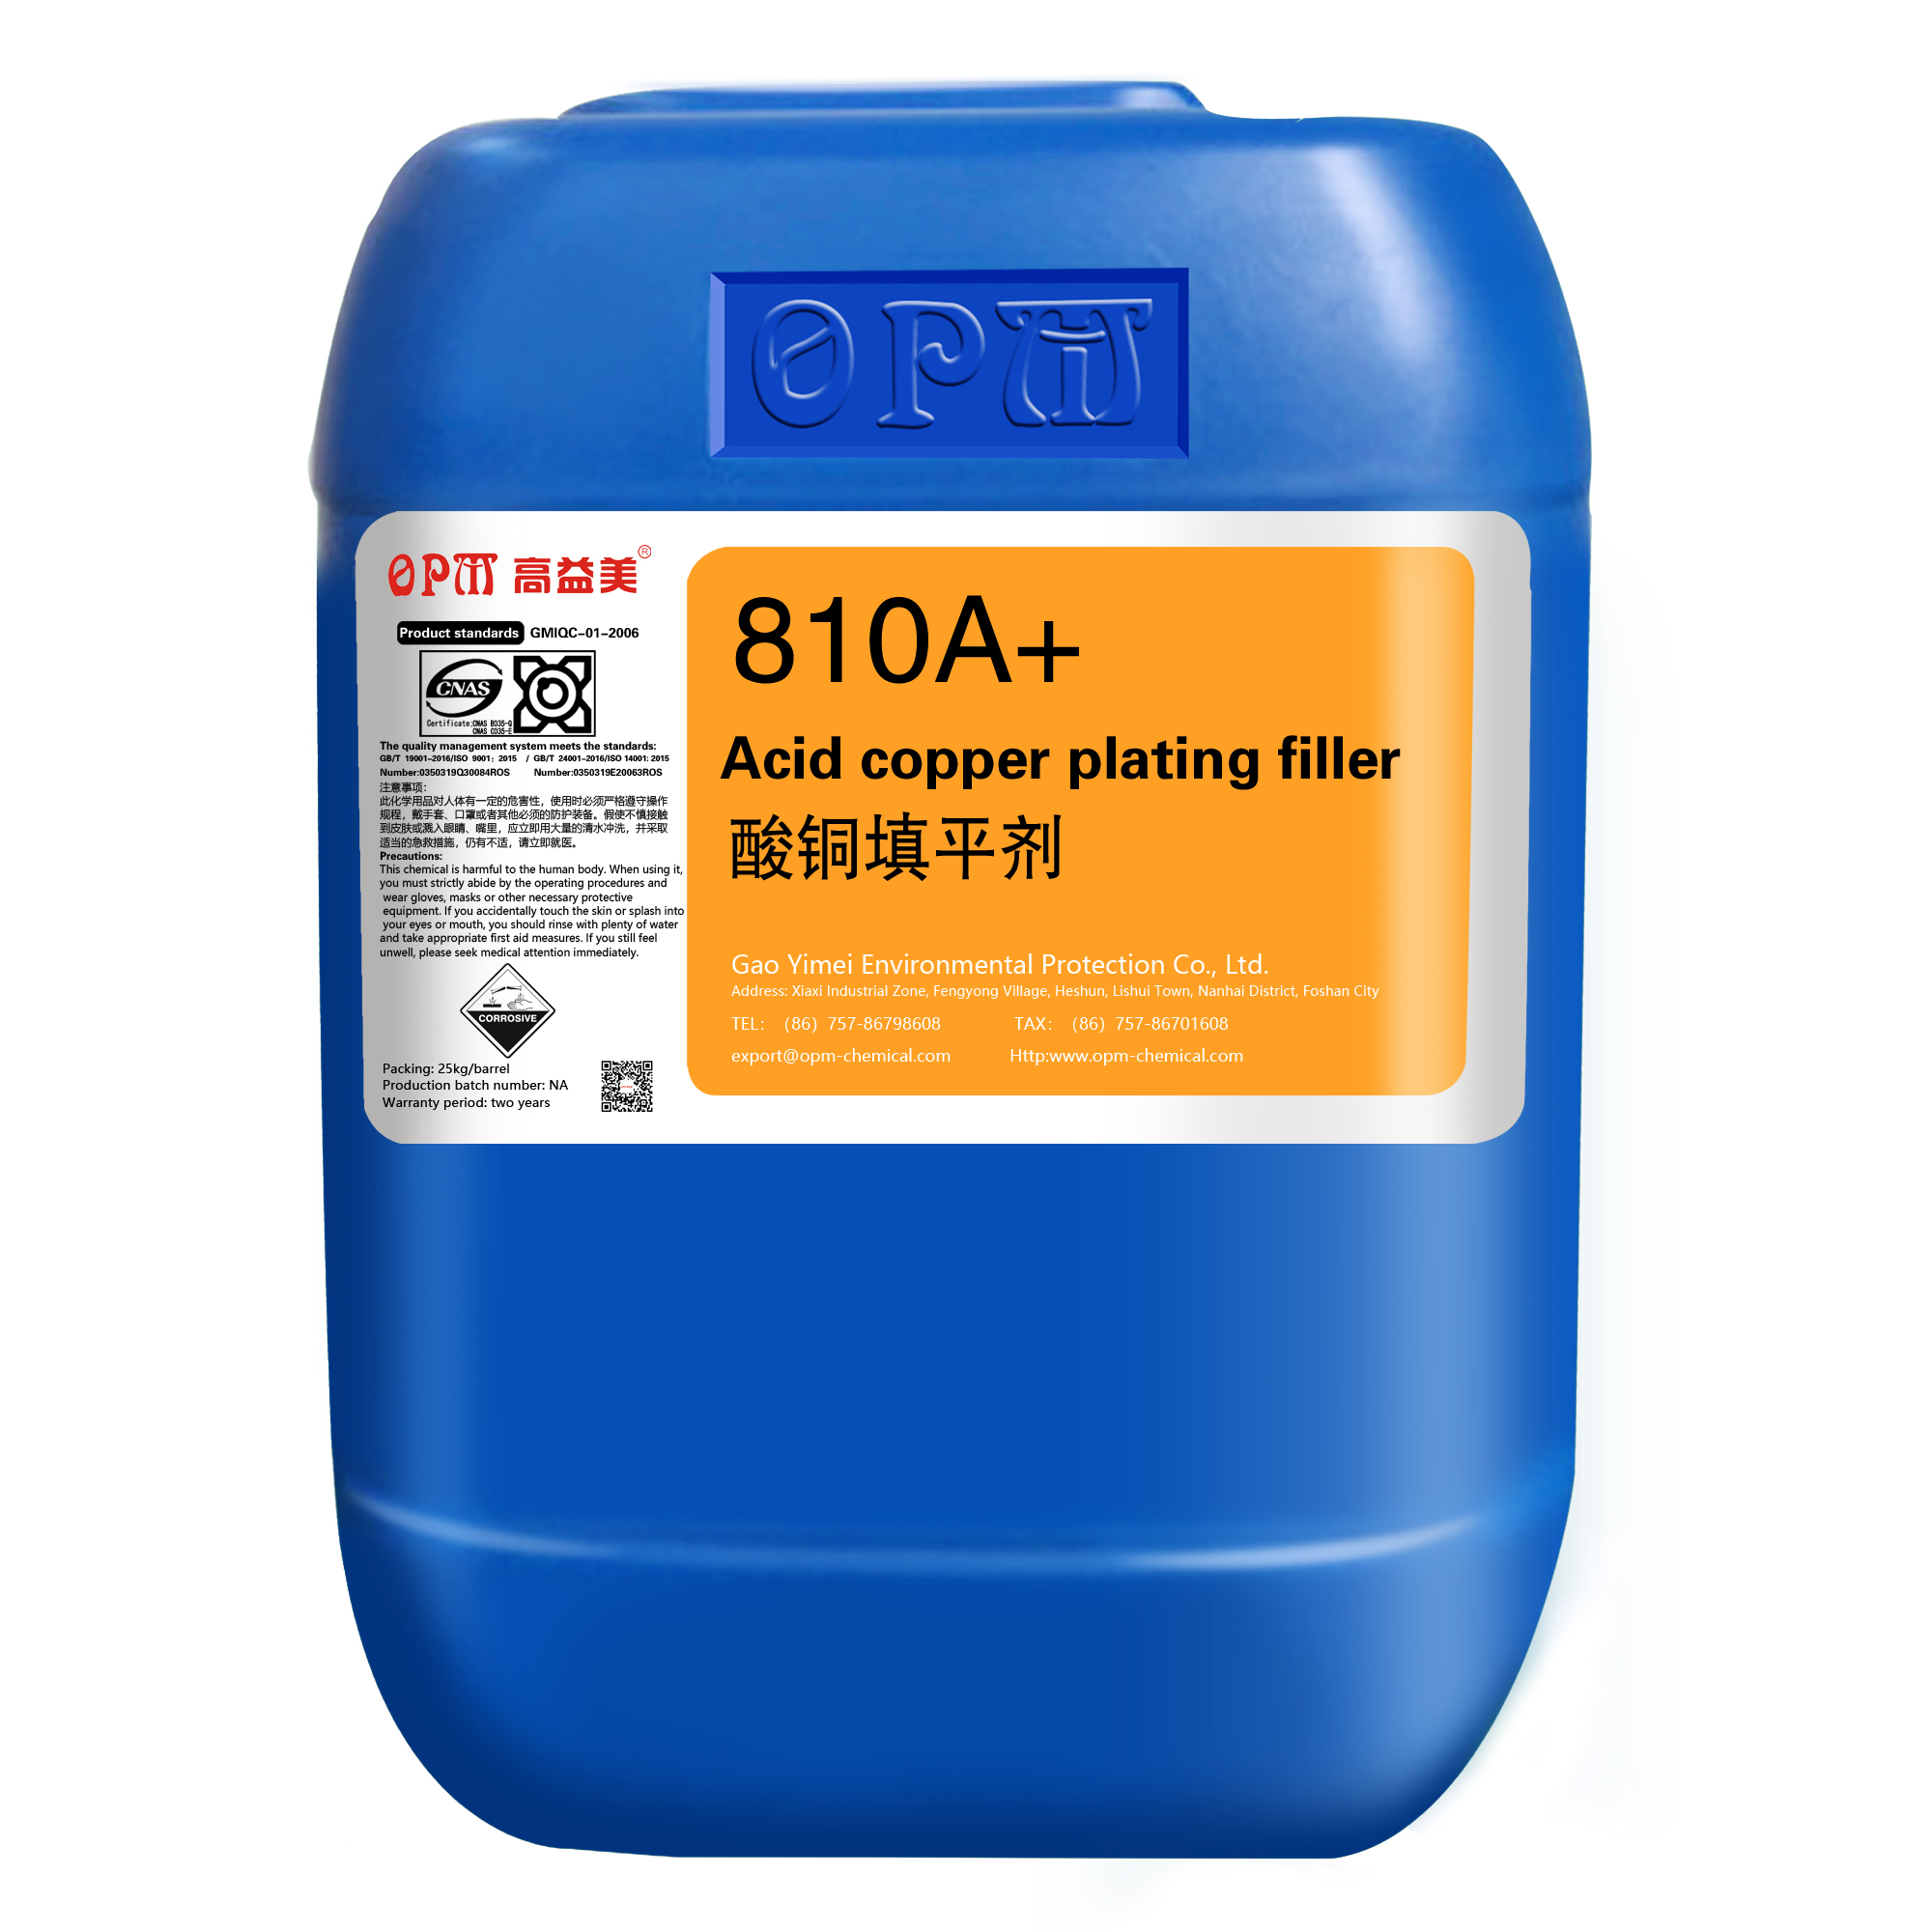 810A+Acid copper plating filler